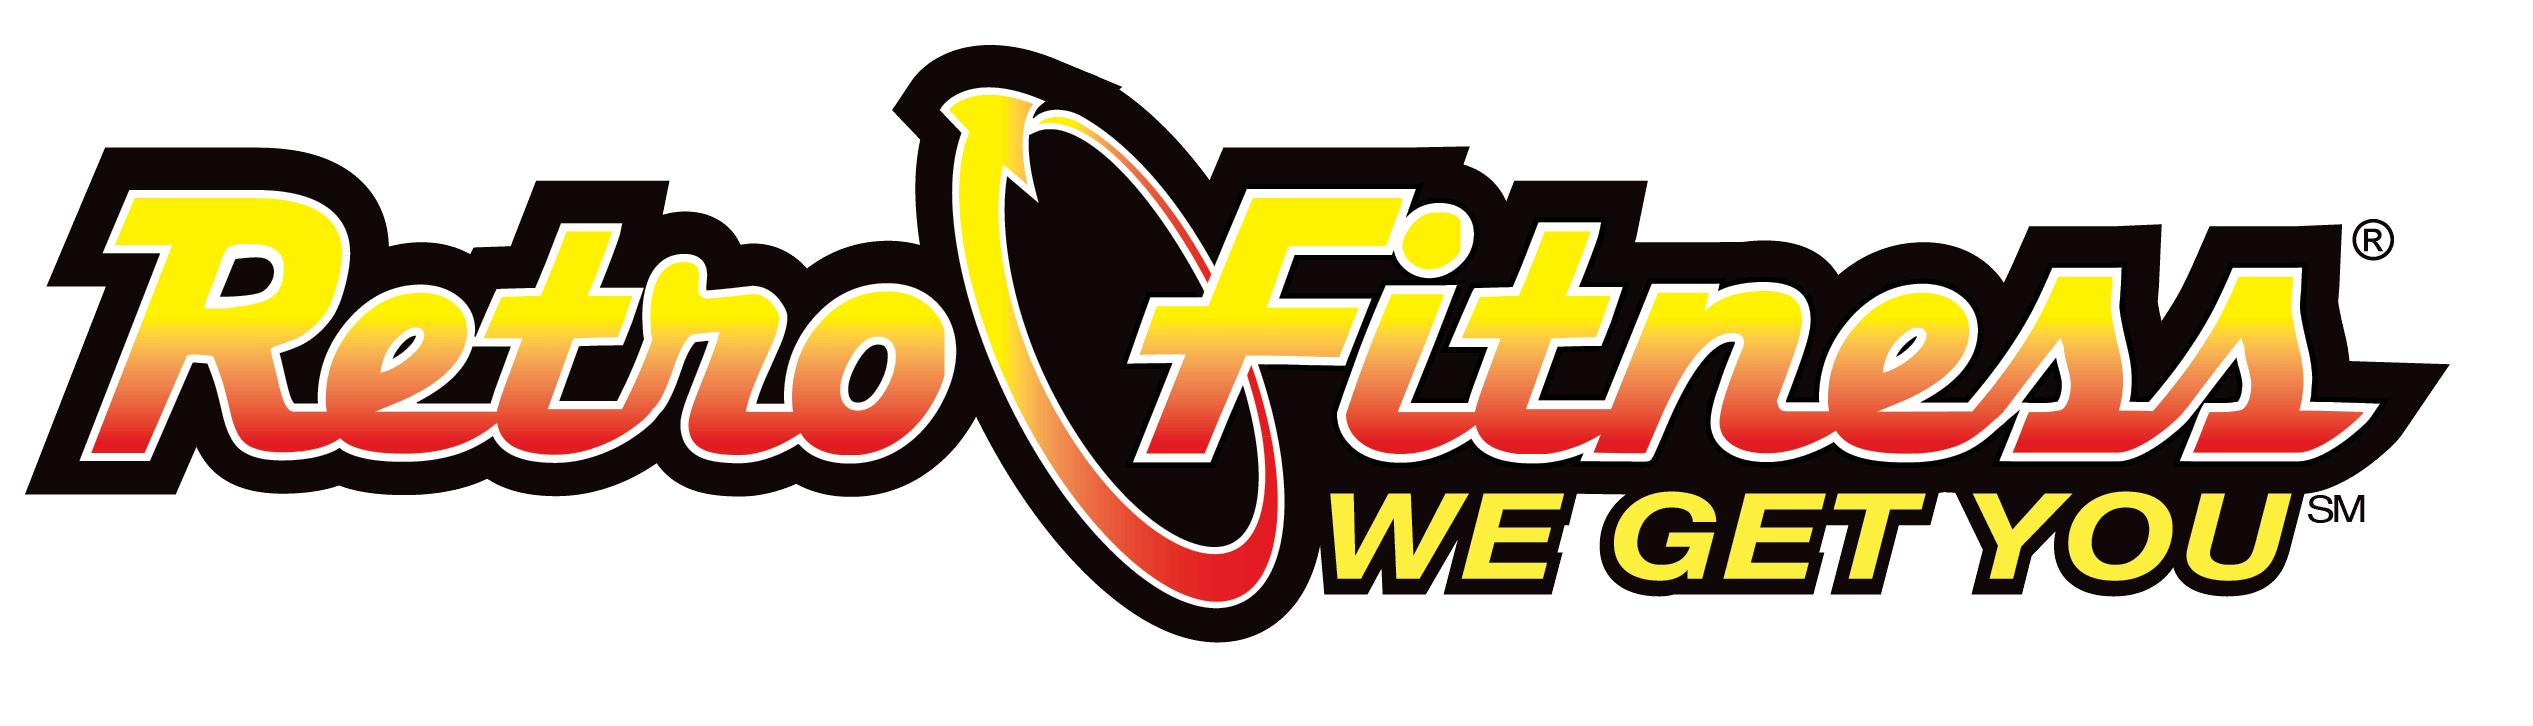 retro fitness logo